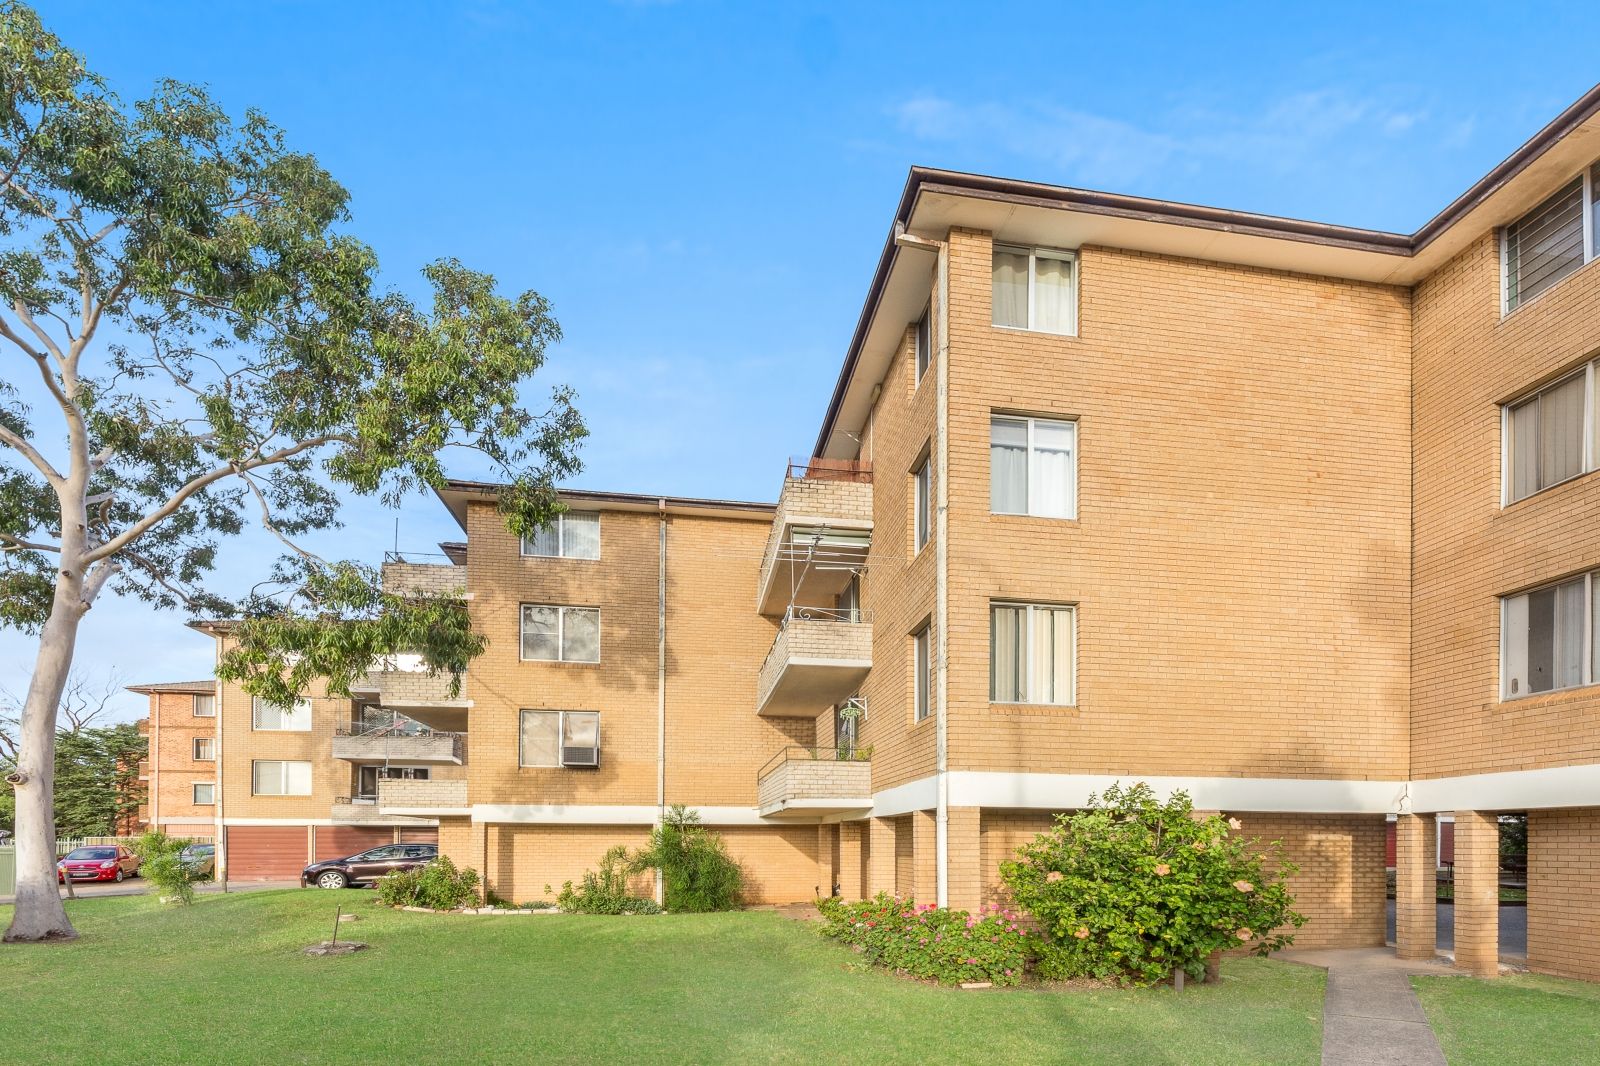 2 bedrooms Apartment / Unit / Flat in 36/120 Cabramatta Rd CABRAMATTA NSW, 2166